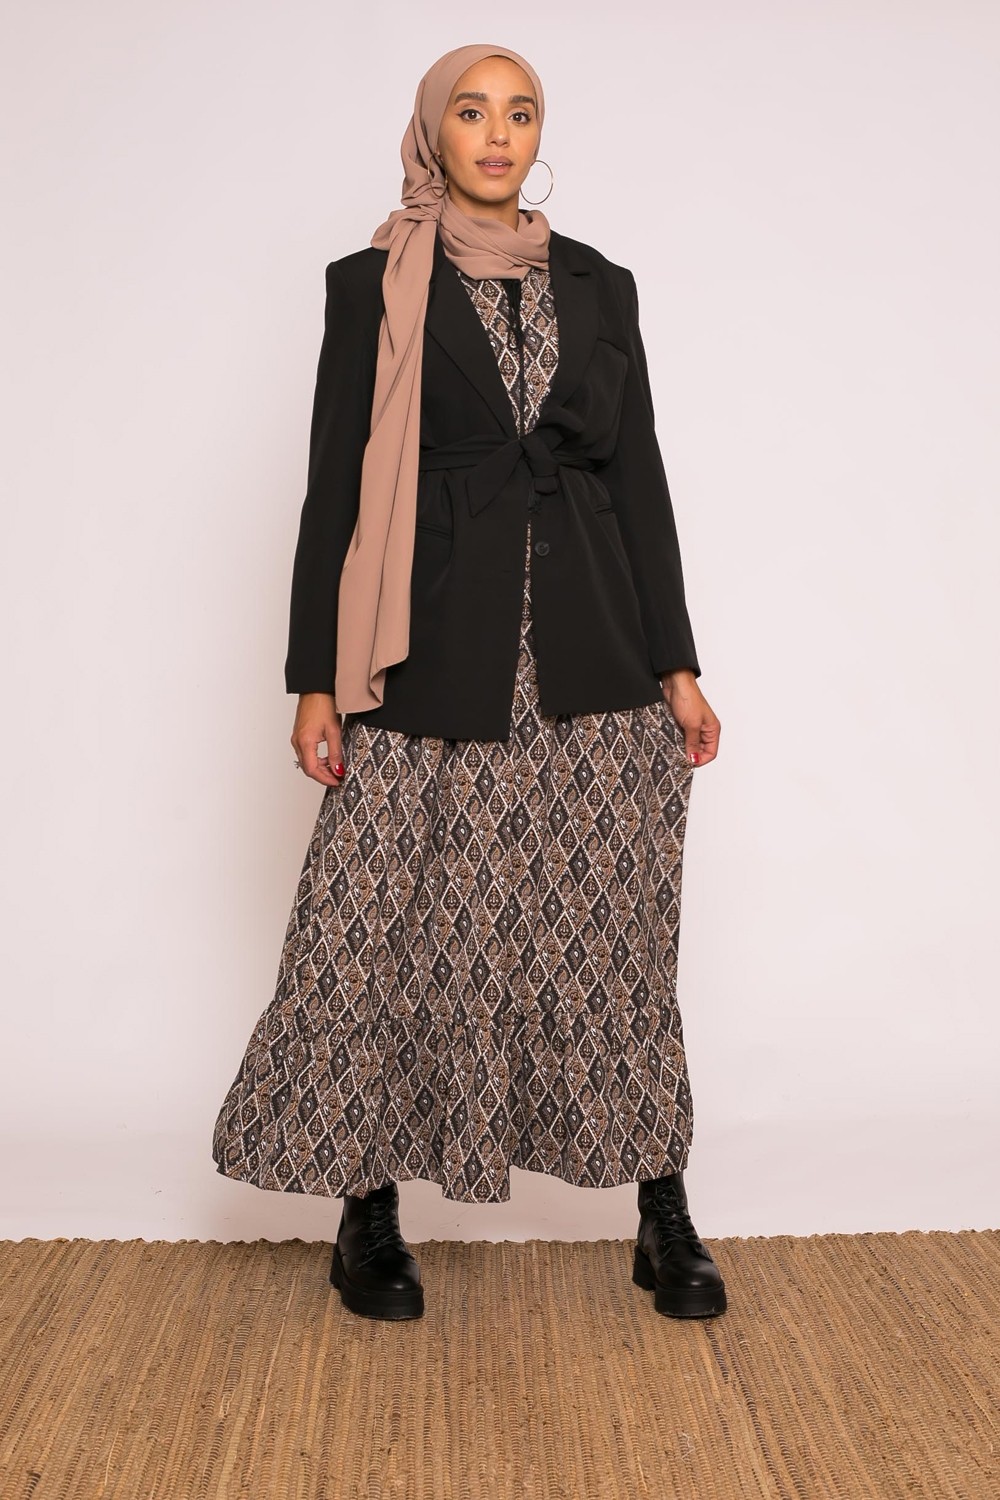 Veste blazer noir prêt à porter modeste fashion pour femme musulmane boutique hijab moderne